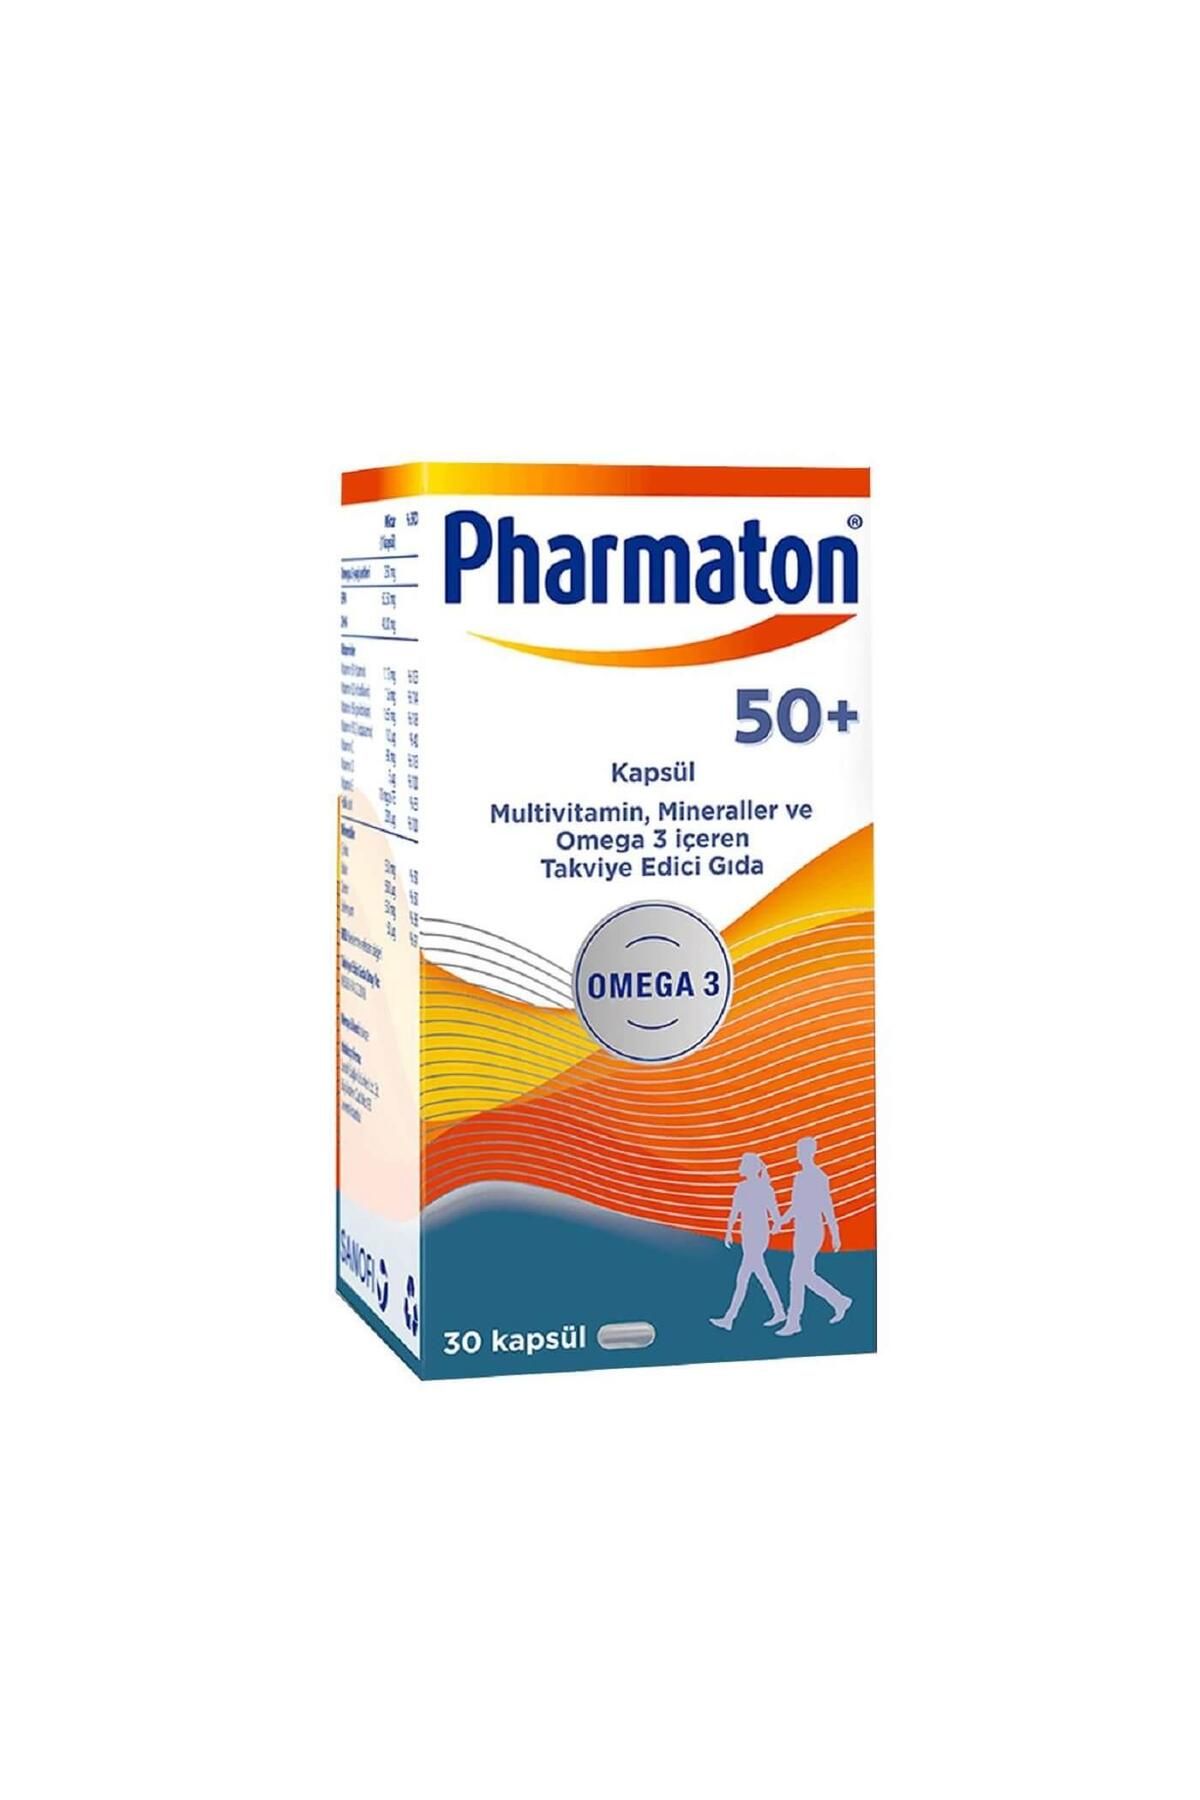 Pharmaton 50 Plus 30 Kapsül - Omega 3 Multivitamin Ve Mineraller